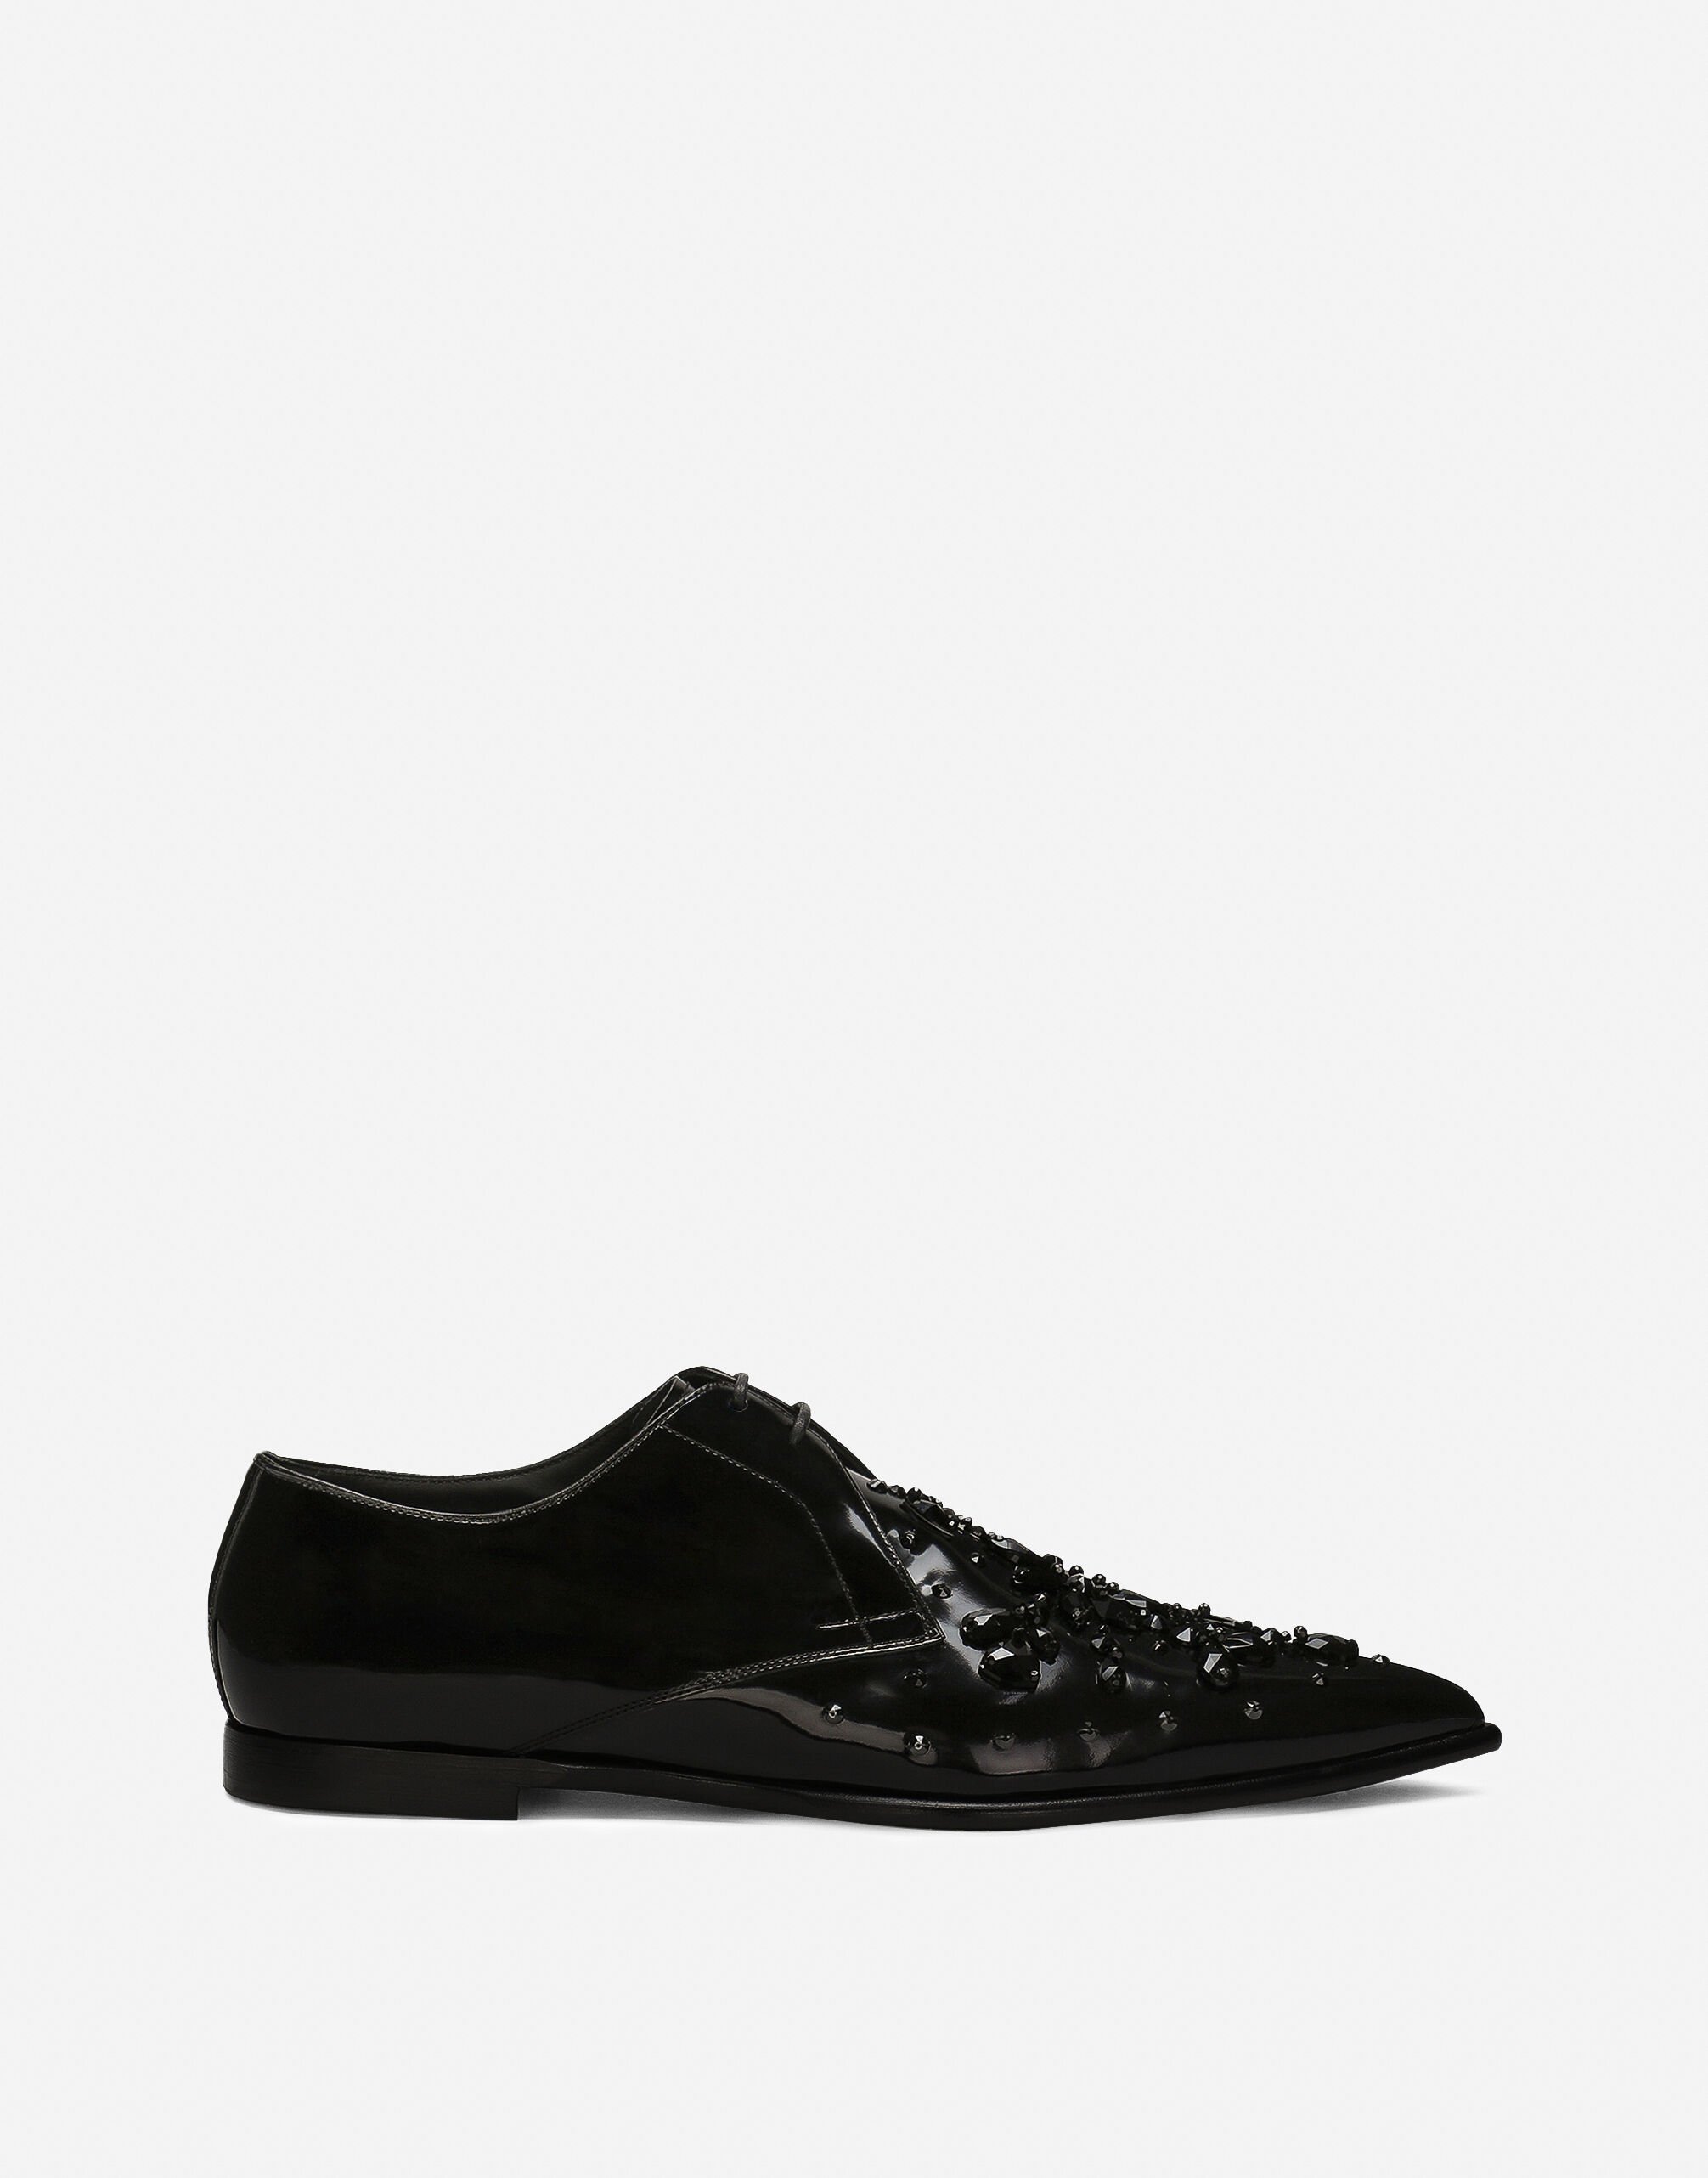 Dolce & Gabbana Calfskin Derby shoes Black A20170A1203